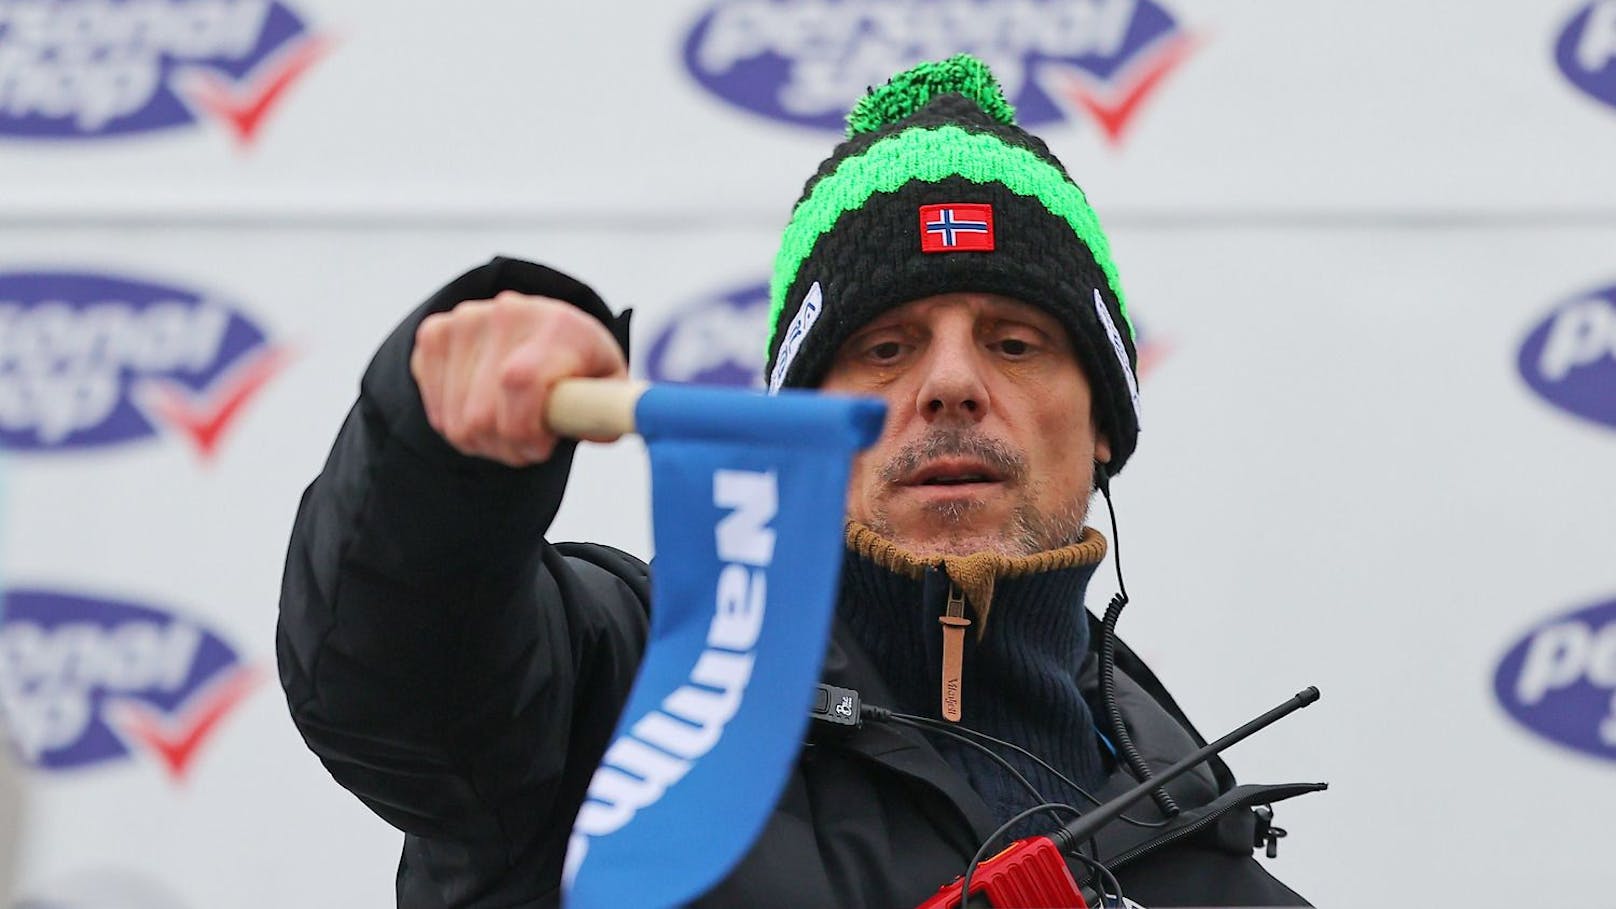 Skispringer rebellieren gegen österreichischen Coach